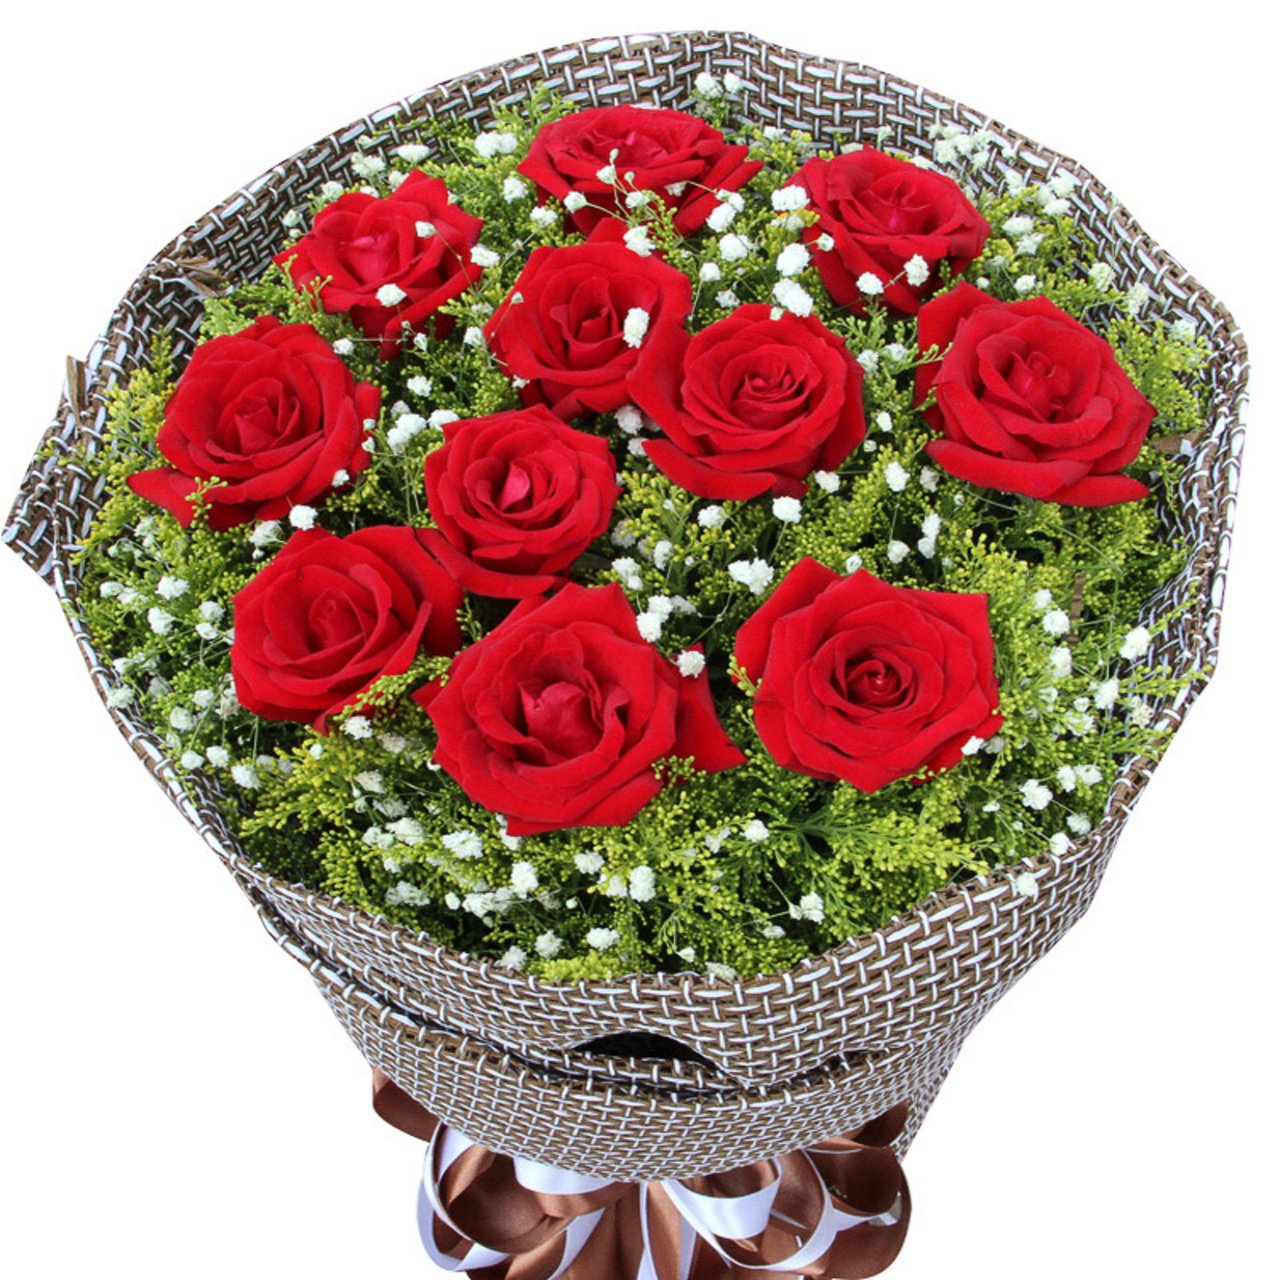 Love is eternal(11 red roses)